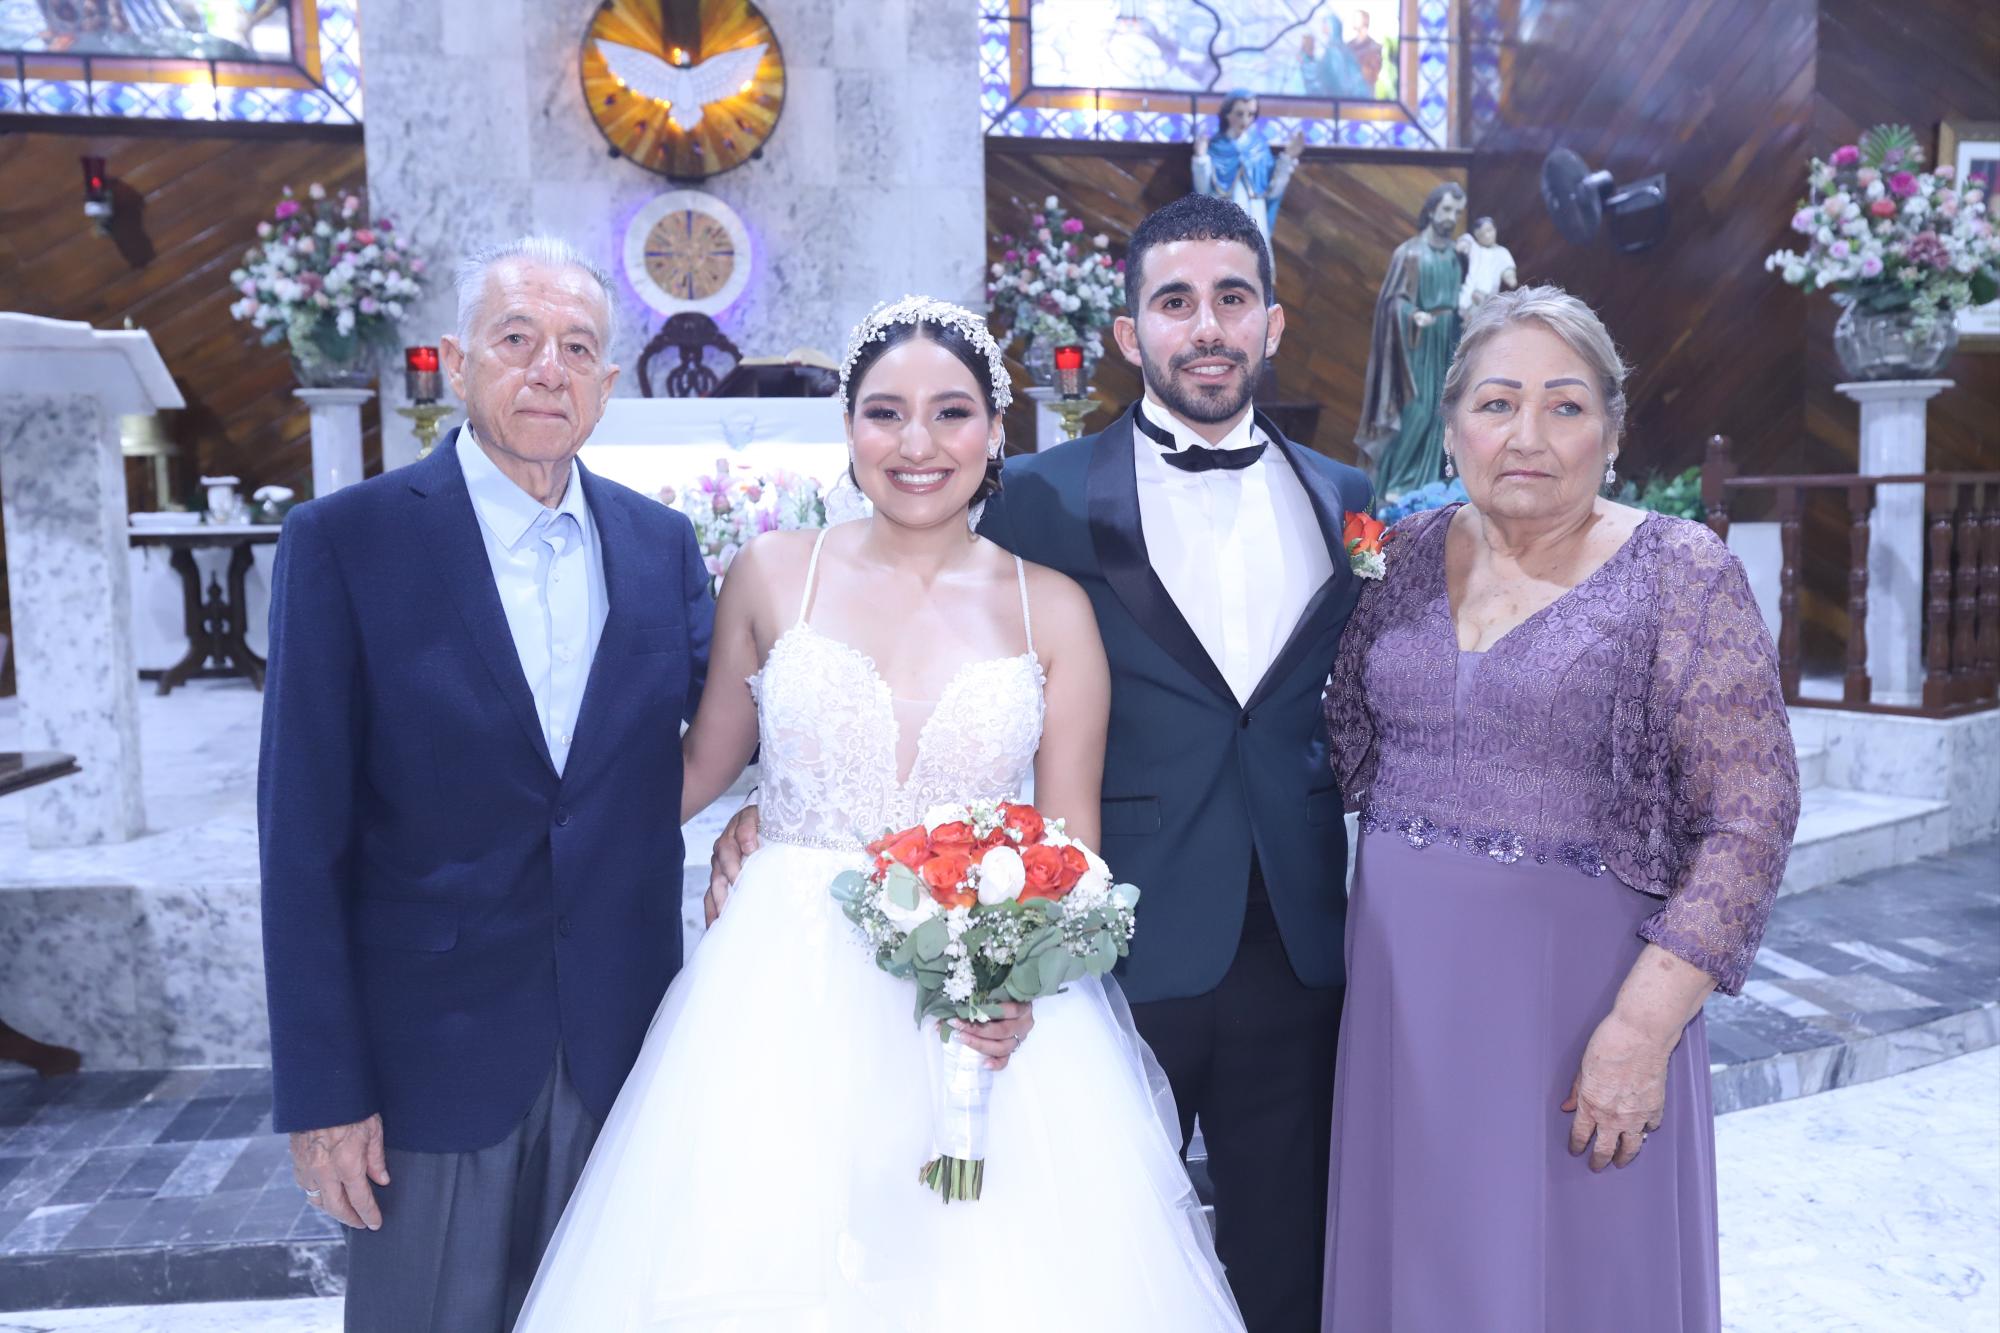 $!José Antonio Marrujo Bañuelos y Guadalupe Ríos García, abuelitos de la novia.